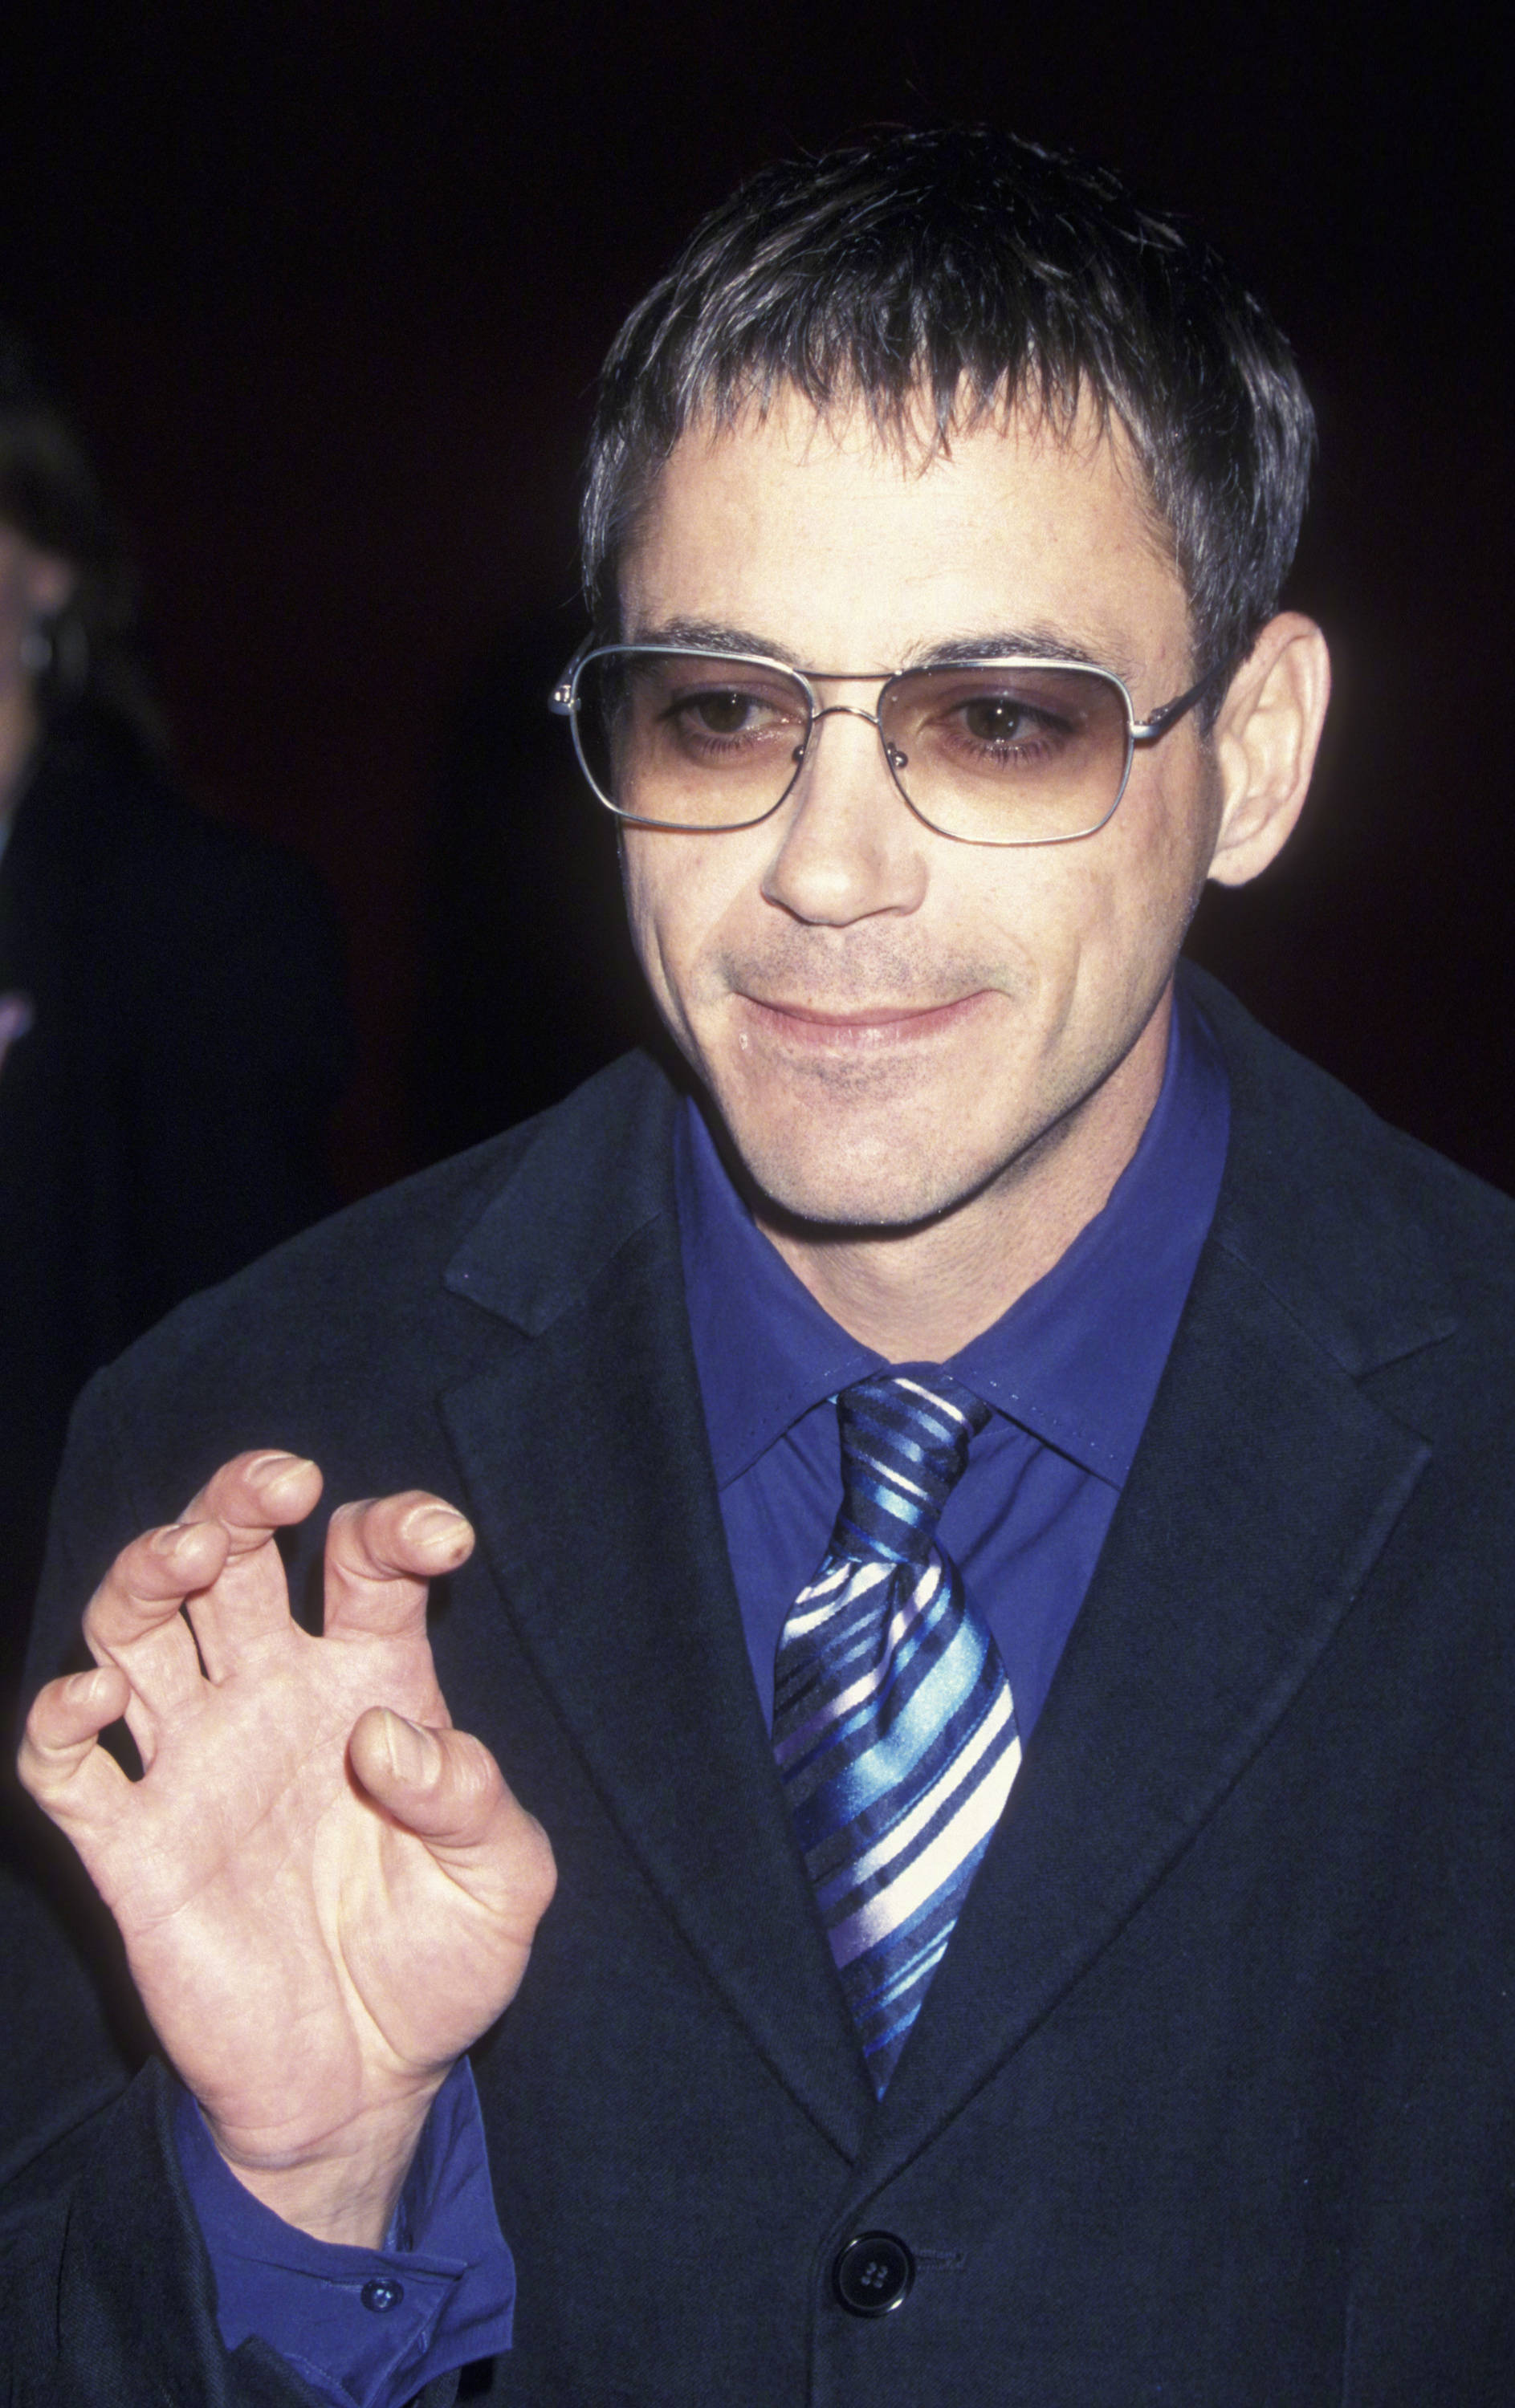 2001年小罗伯特·唐尼旧照,眼镜都遮不住长睫毛